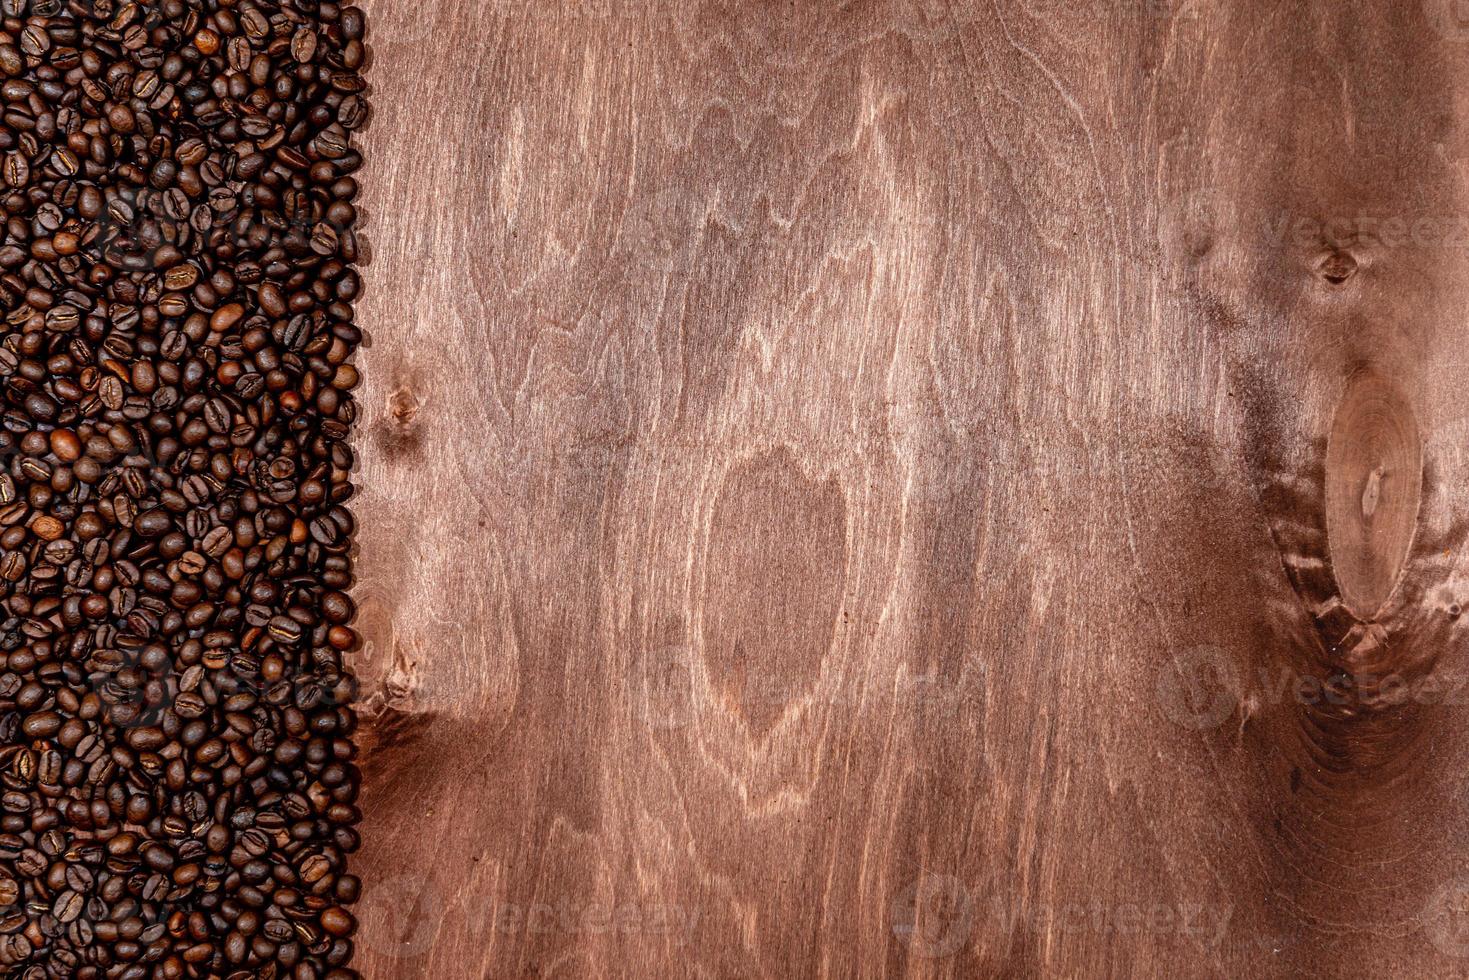 kaffebönor rand på mörk trä textur bakgrund, kopiera utrymme för text foto